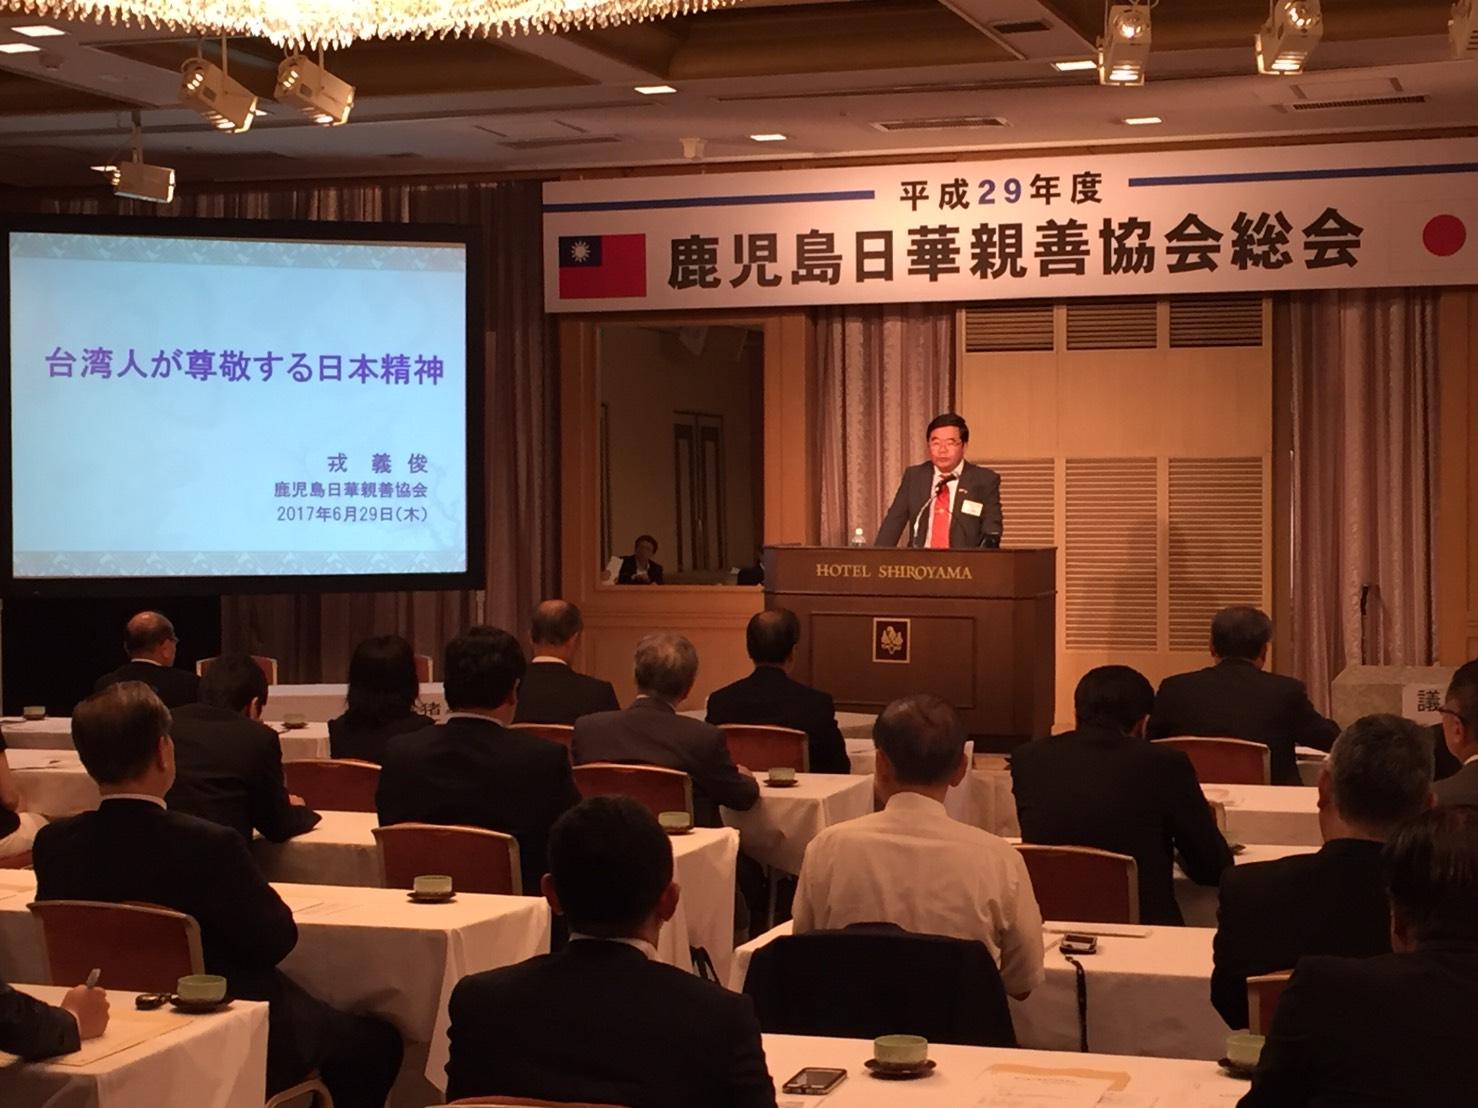 6月29日、戎総領事が「鹿児島日華親善協会年次総会・懇親会」に出席、「台湾人が尊敬する日本精神」を題として演説した。